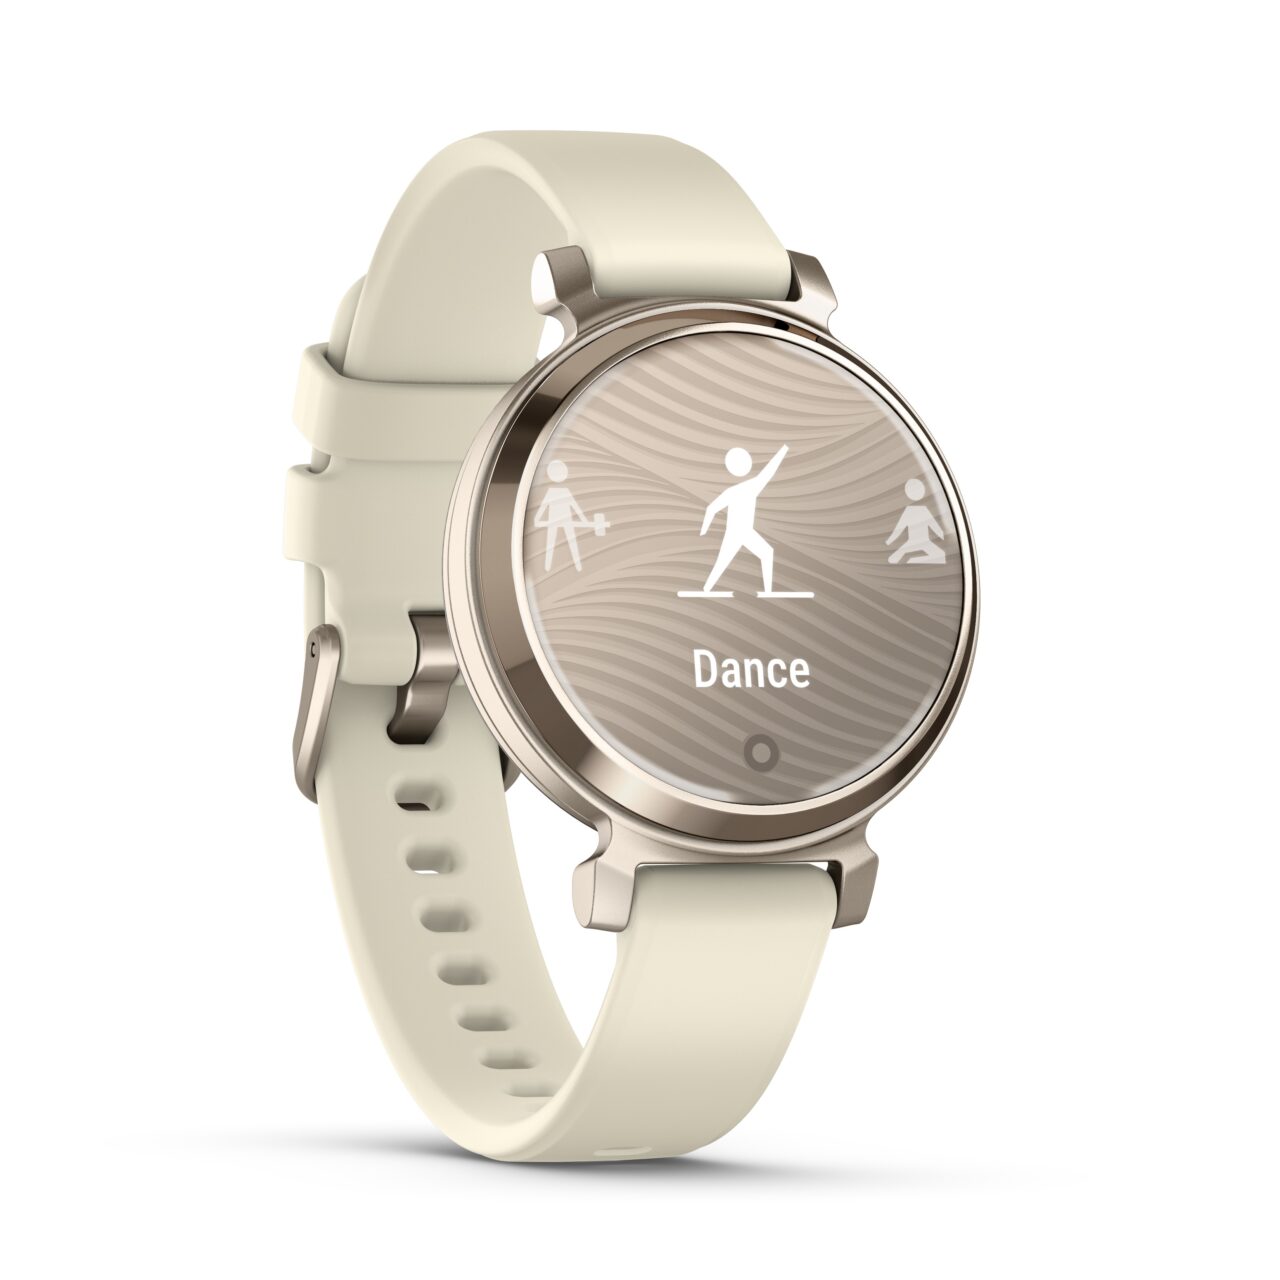 Inteligentny zegarek sportowy w kolorze beżowym z ekranem pokazującym ikony tańczących osób i napis "Dance".